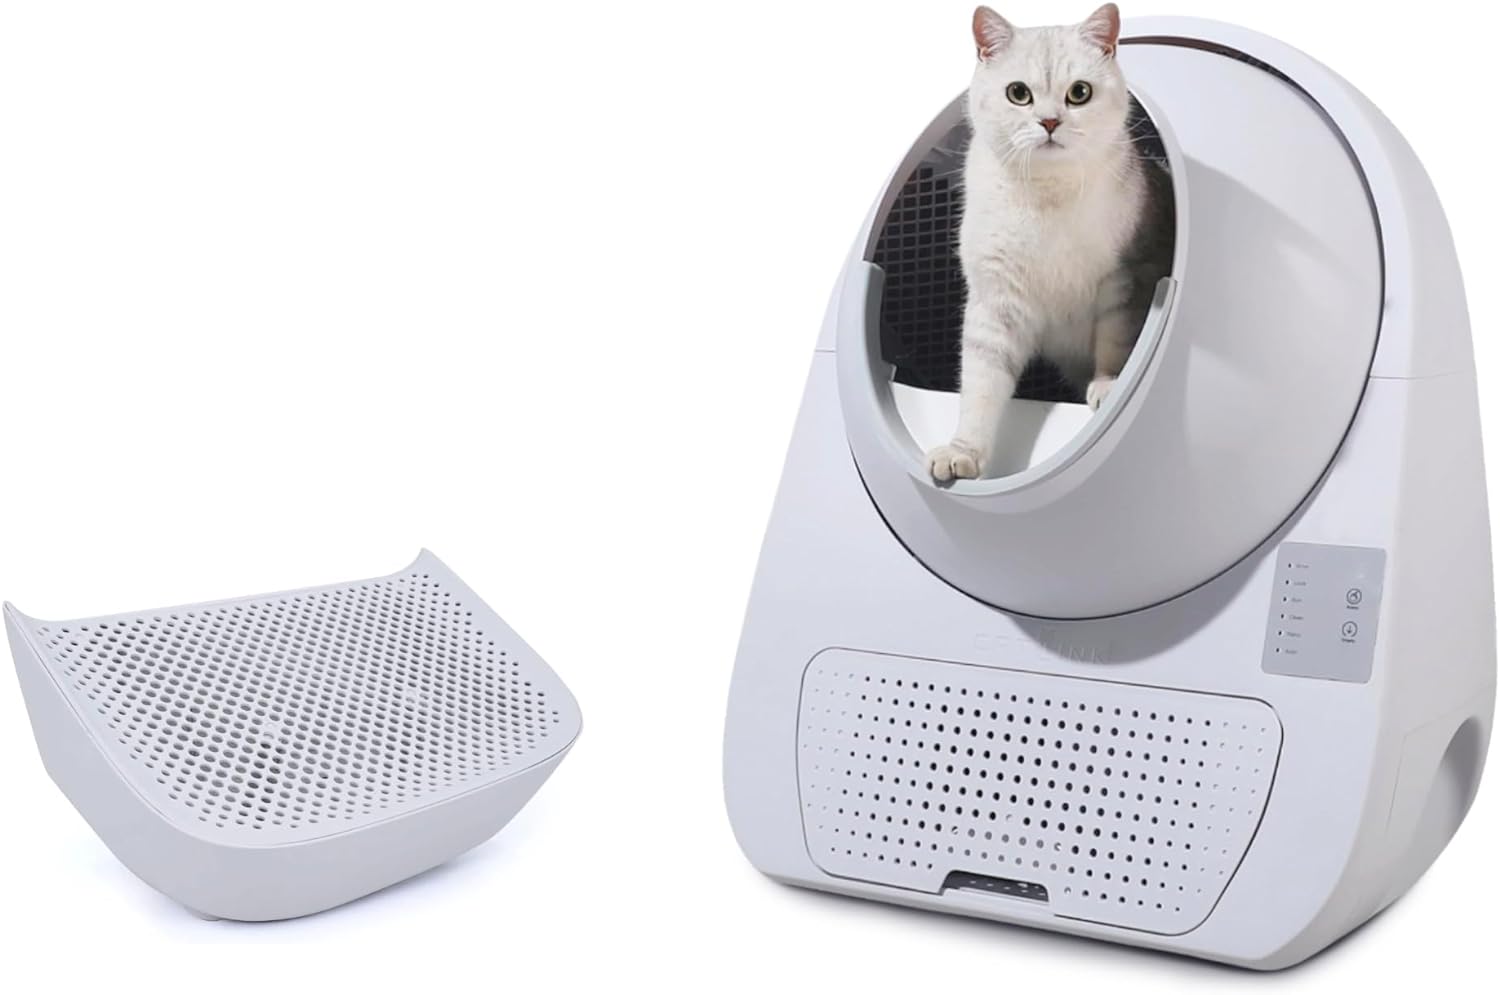 ComfyCat Ultimate, premium automatische kattenbak, maak je leven gemakkelijker met een zelfreinigende kattenbak, steriele kattenbak met app-bediening, wit